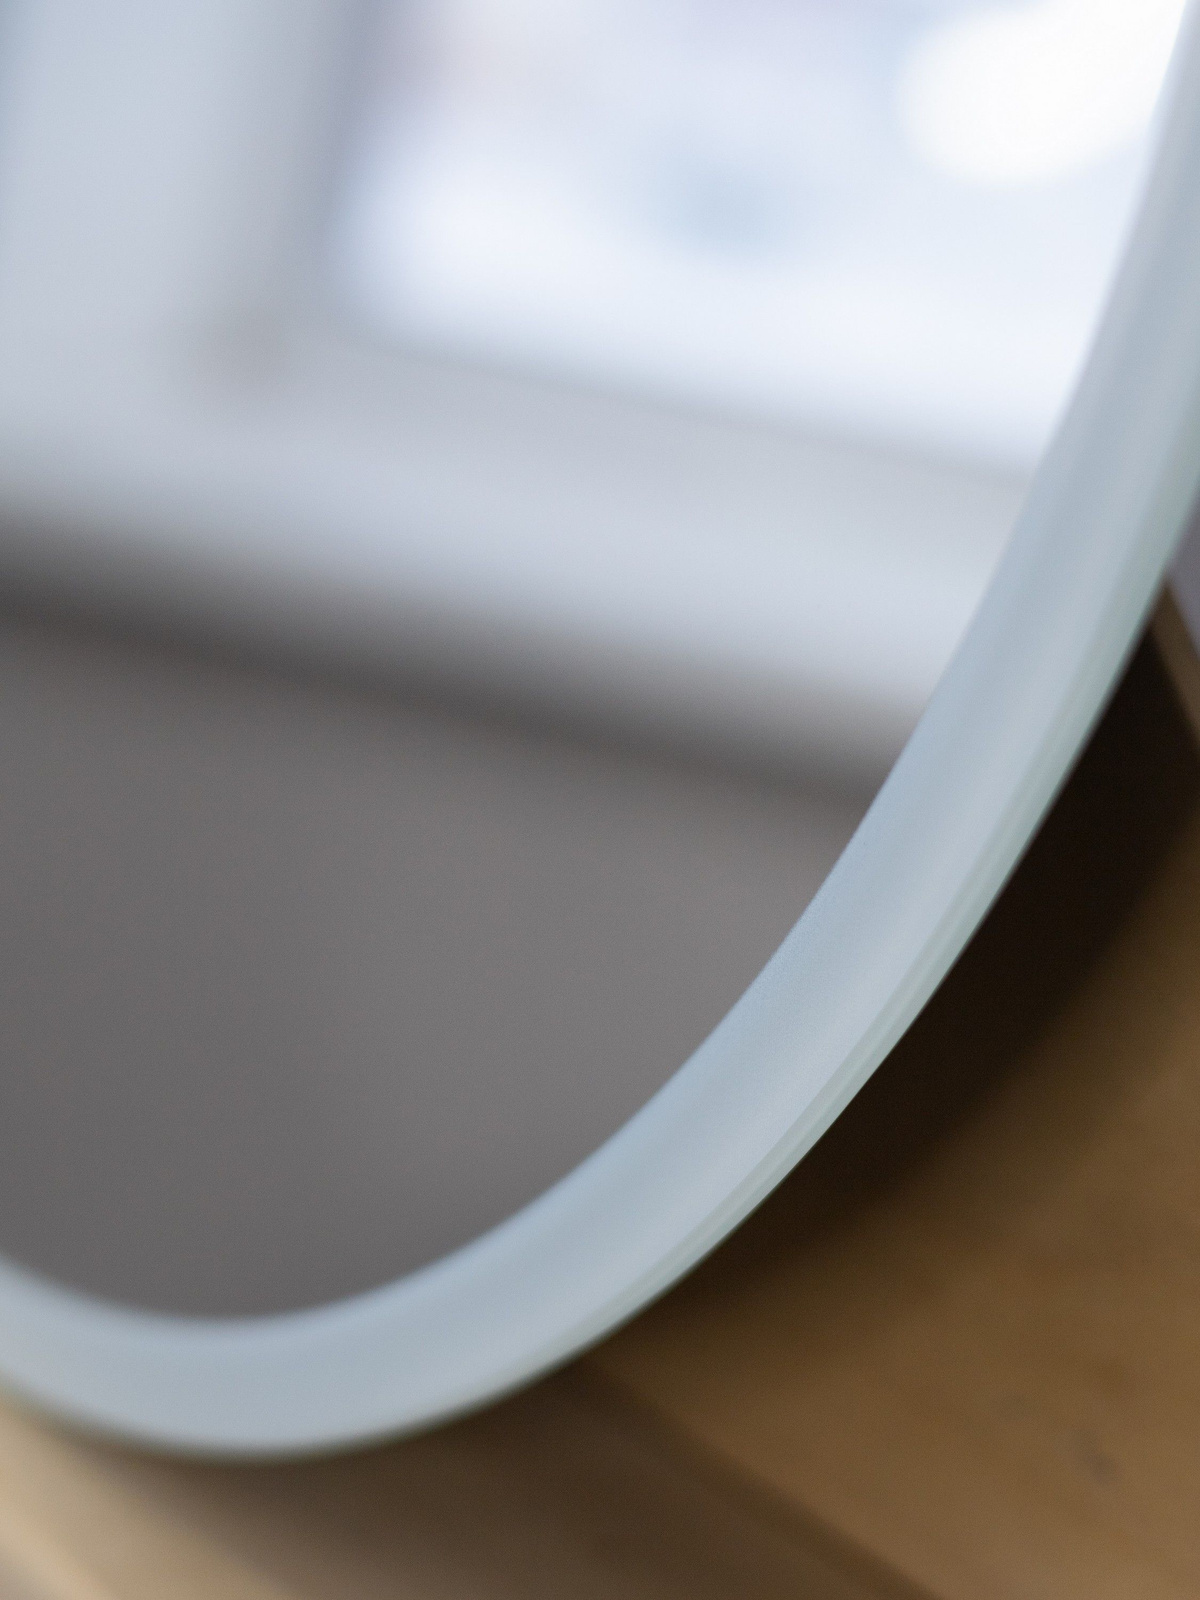 Окантовка методом УФ 3Д печати, визуально выделяет белую рамку на зеркале. Рамка не смотрится массивно по сравнению с дополнительно наклеенными материалами (рама). Крепления входят в комплект, установка простая.